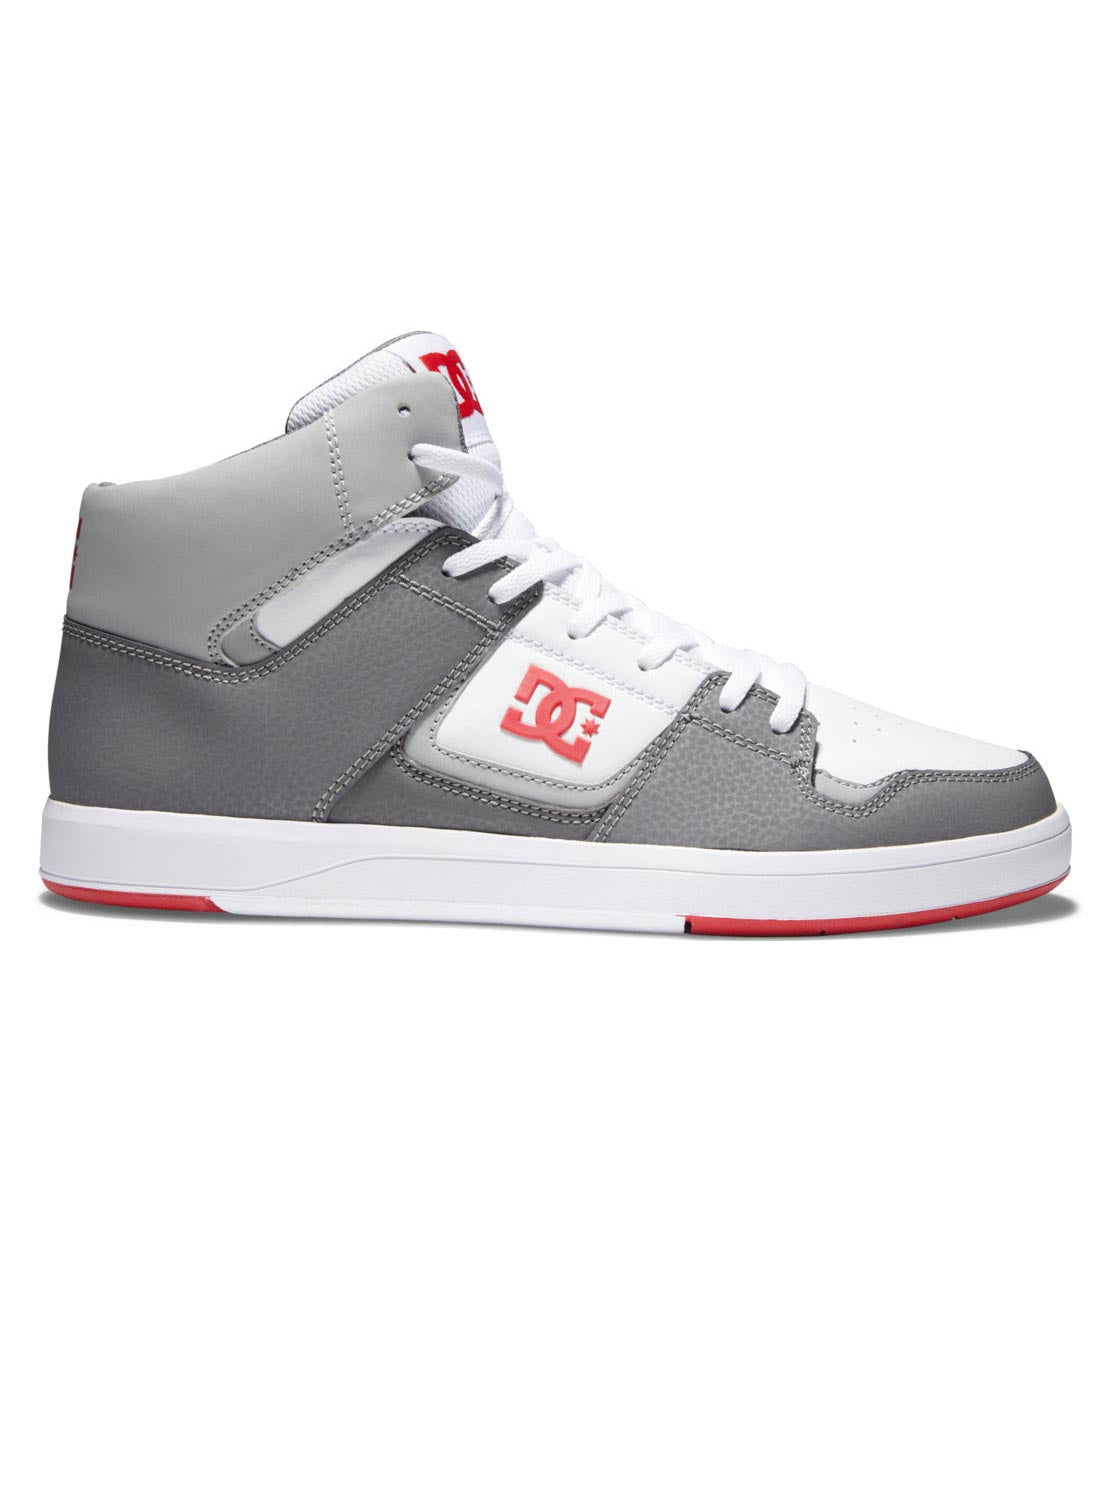 Dc Shoes Cure Hi Top Blanc/gris/rouge | Nouveaux produits | Produits les plus récents | Produits les plus vendus | surfdevils.com